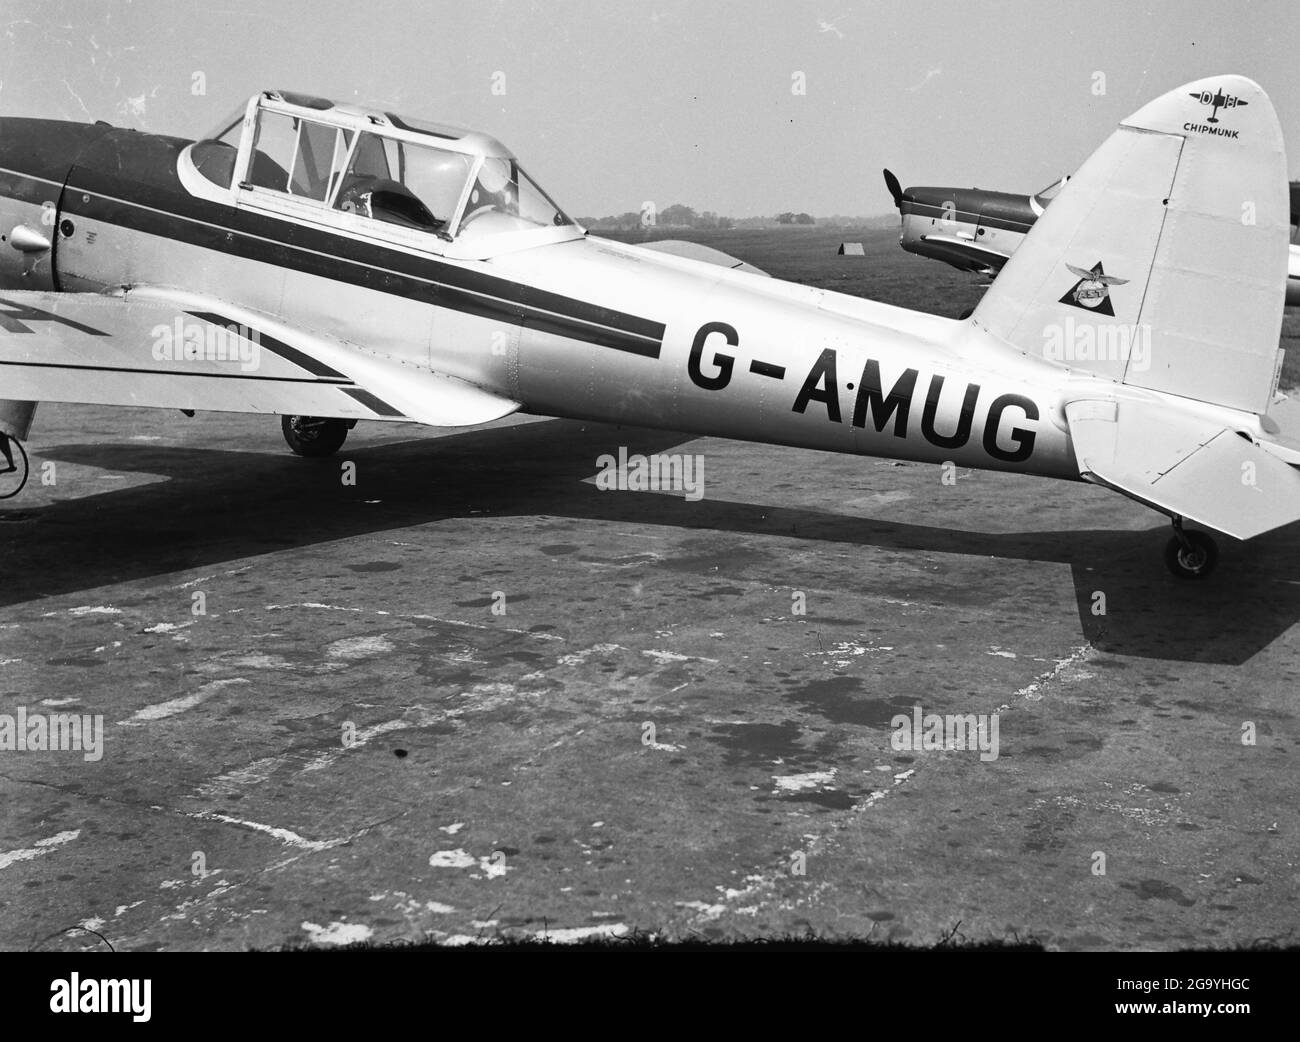 G-AMUG ist ein ziviler registrierter De Havilland DHC-1 Chipmunk, wahrscheinlich in den 1950er Jahren in Hamble, Hampshire, abgebildet. Dieses Flugzeug stürzte am 29. Mai 1974 ab, als es von Teesside Flying Club Ltd betrieben wurde, tötete den Piloten und verletzte seinen Passagier schwer. Stockfoto